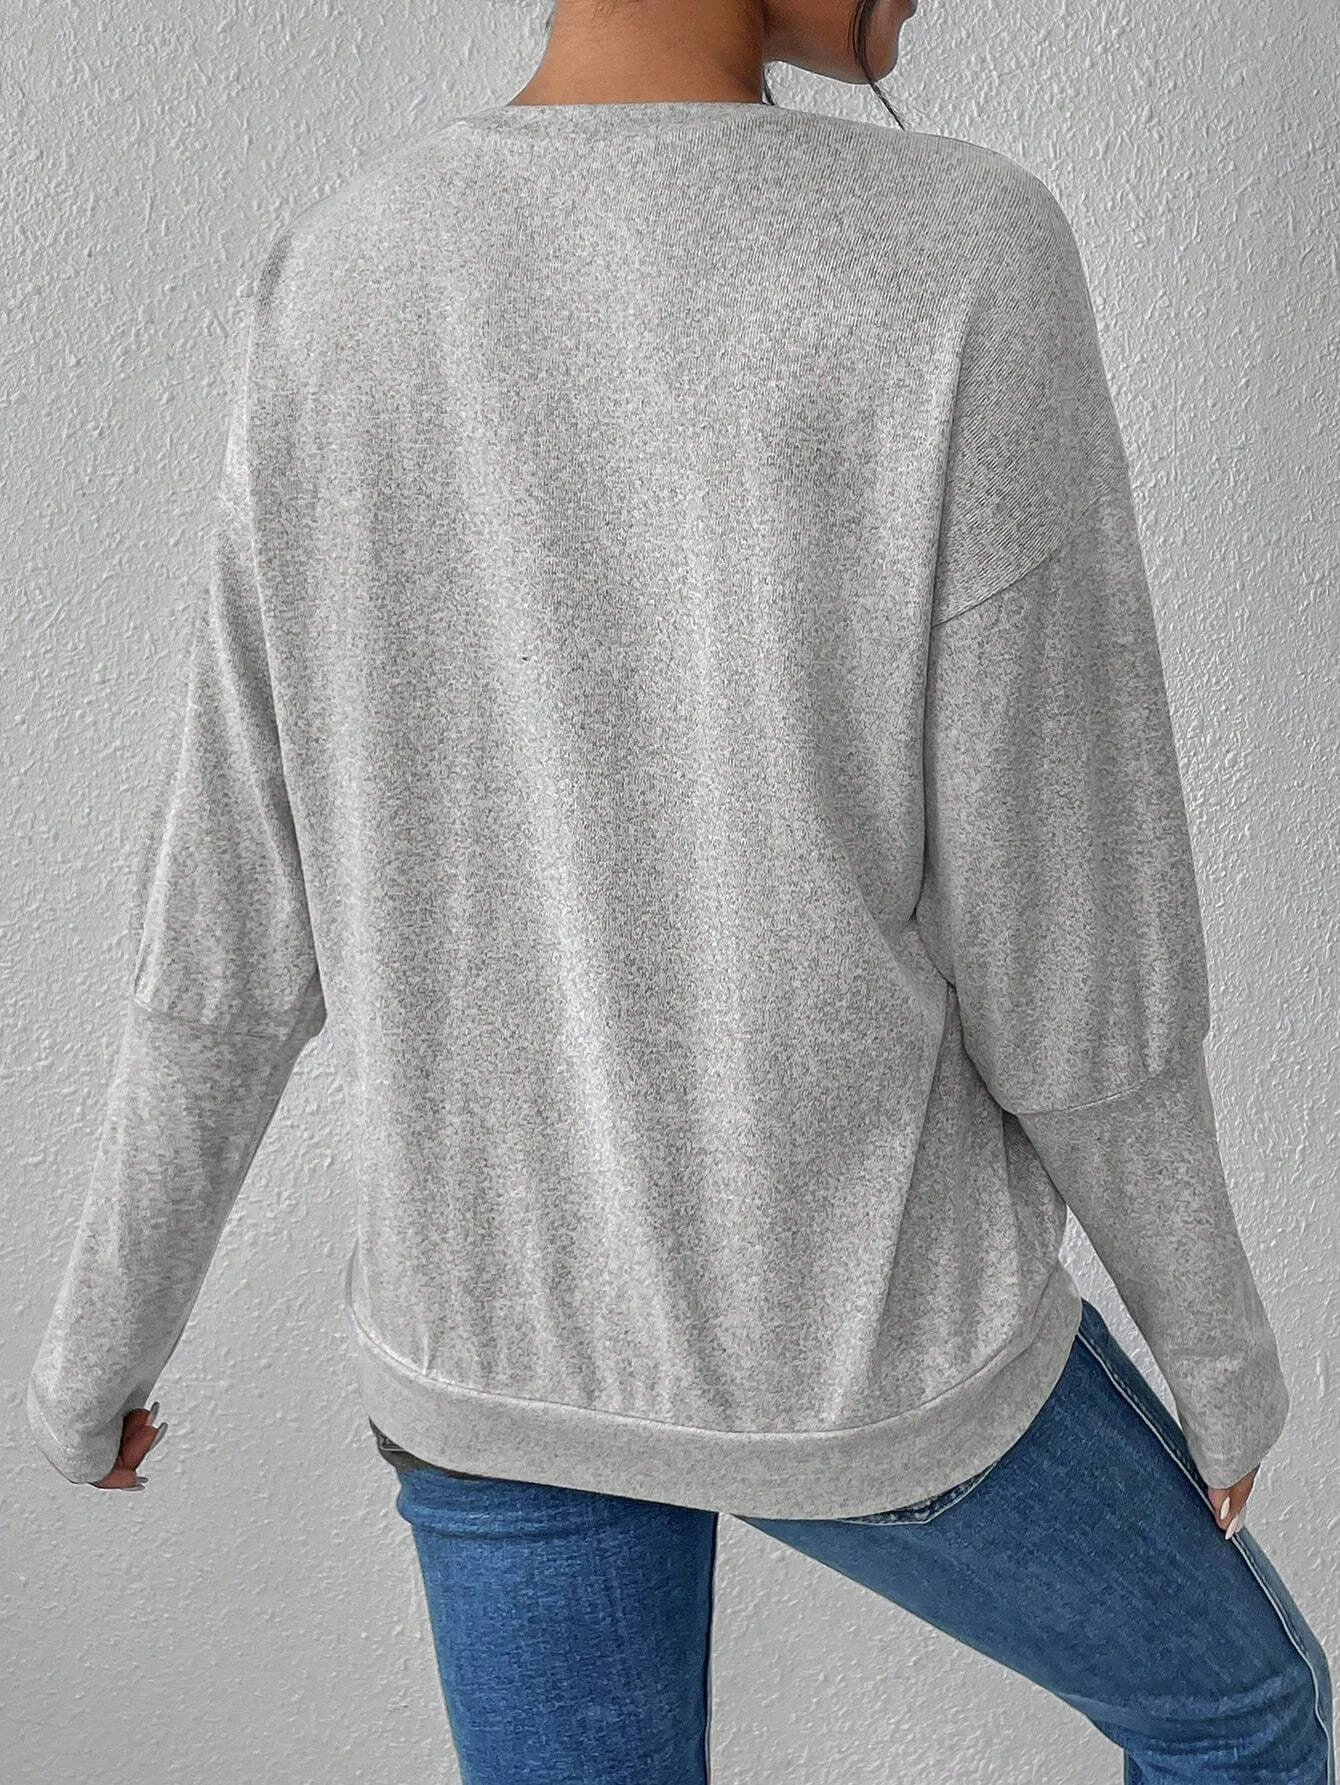 Weit Fluff/Granular-Fleece-Stoff Rundhals Lässig Sweatshirt